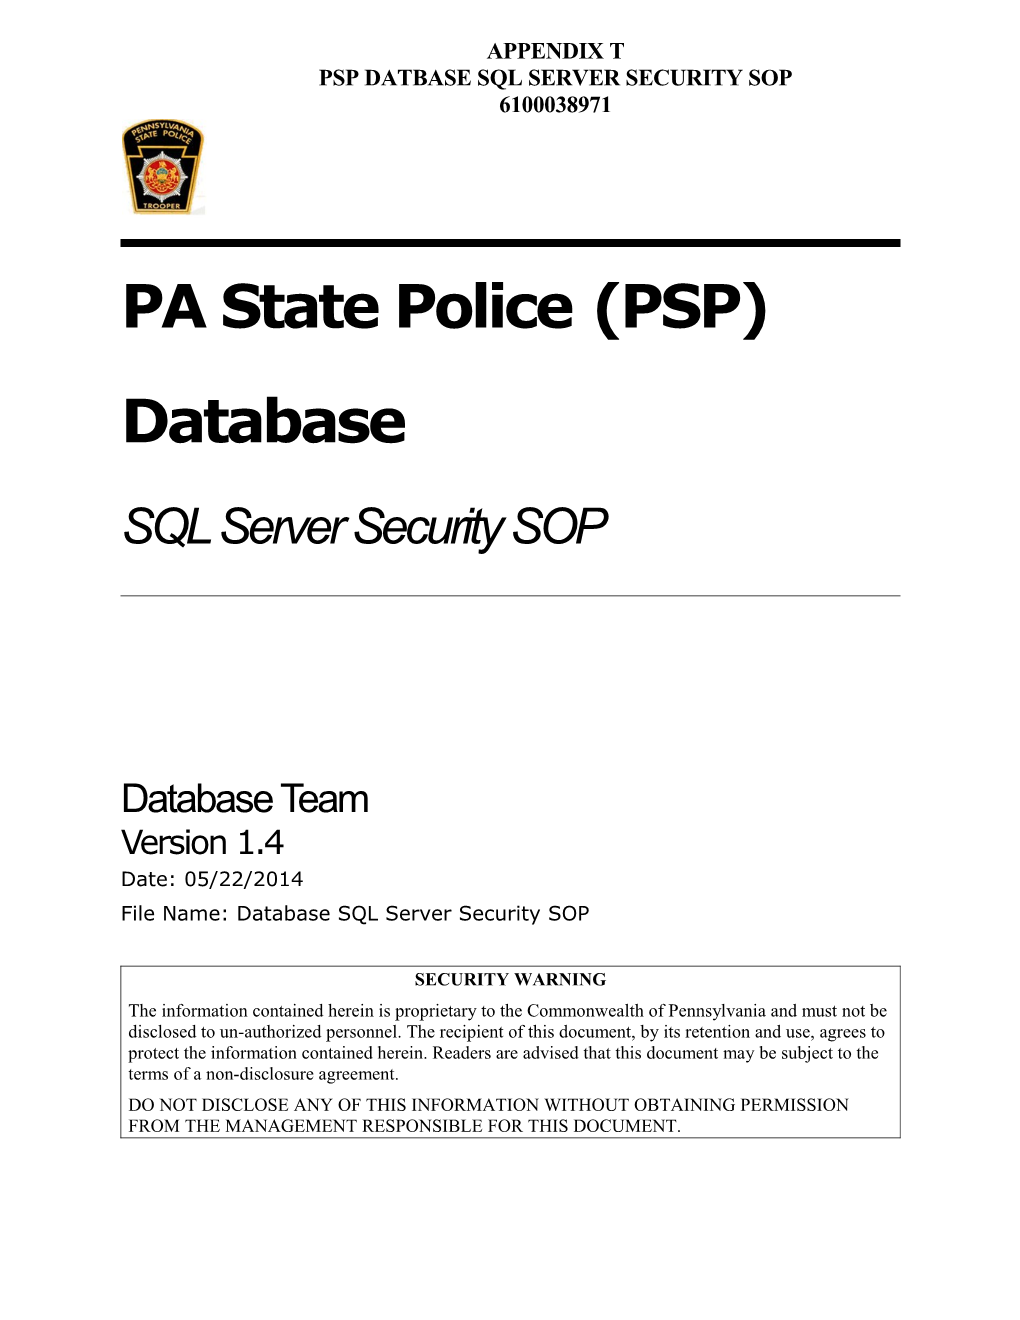 Database Design SQL Server Security SOP